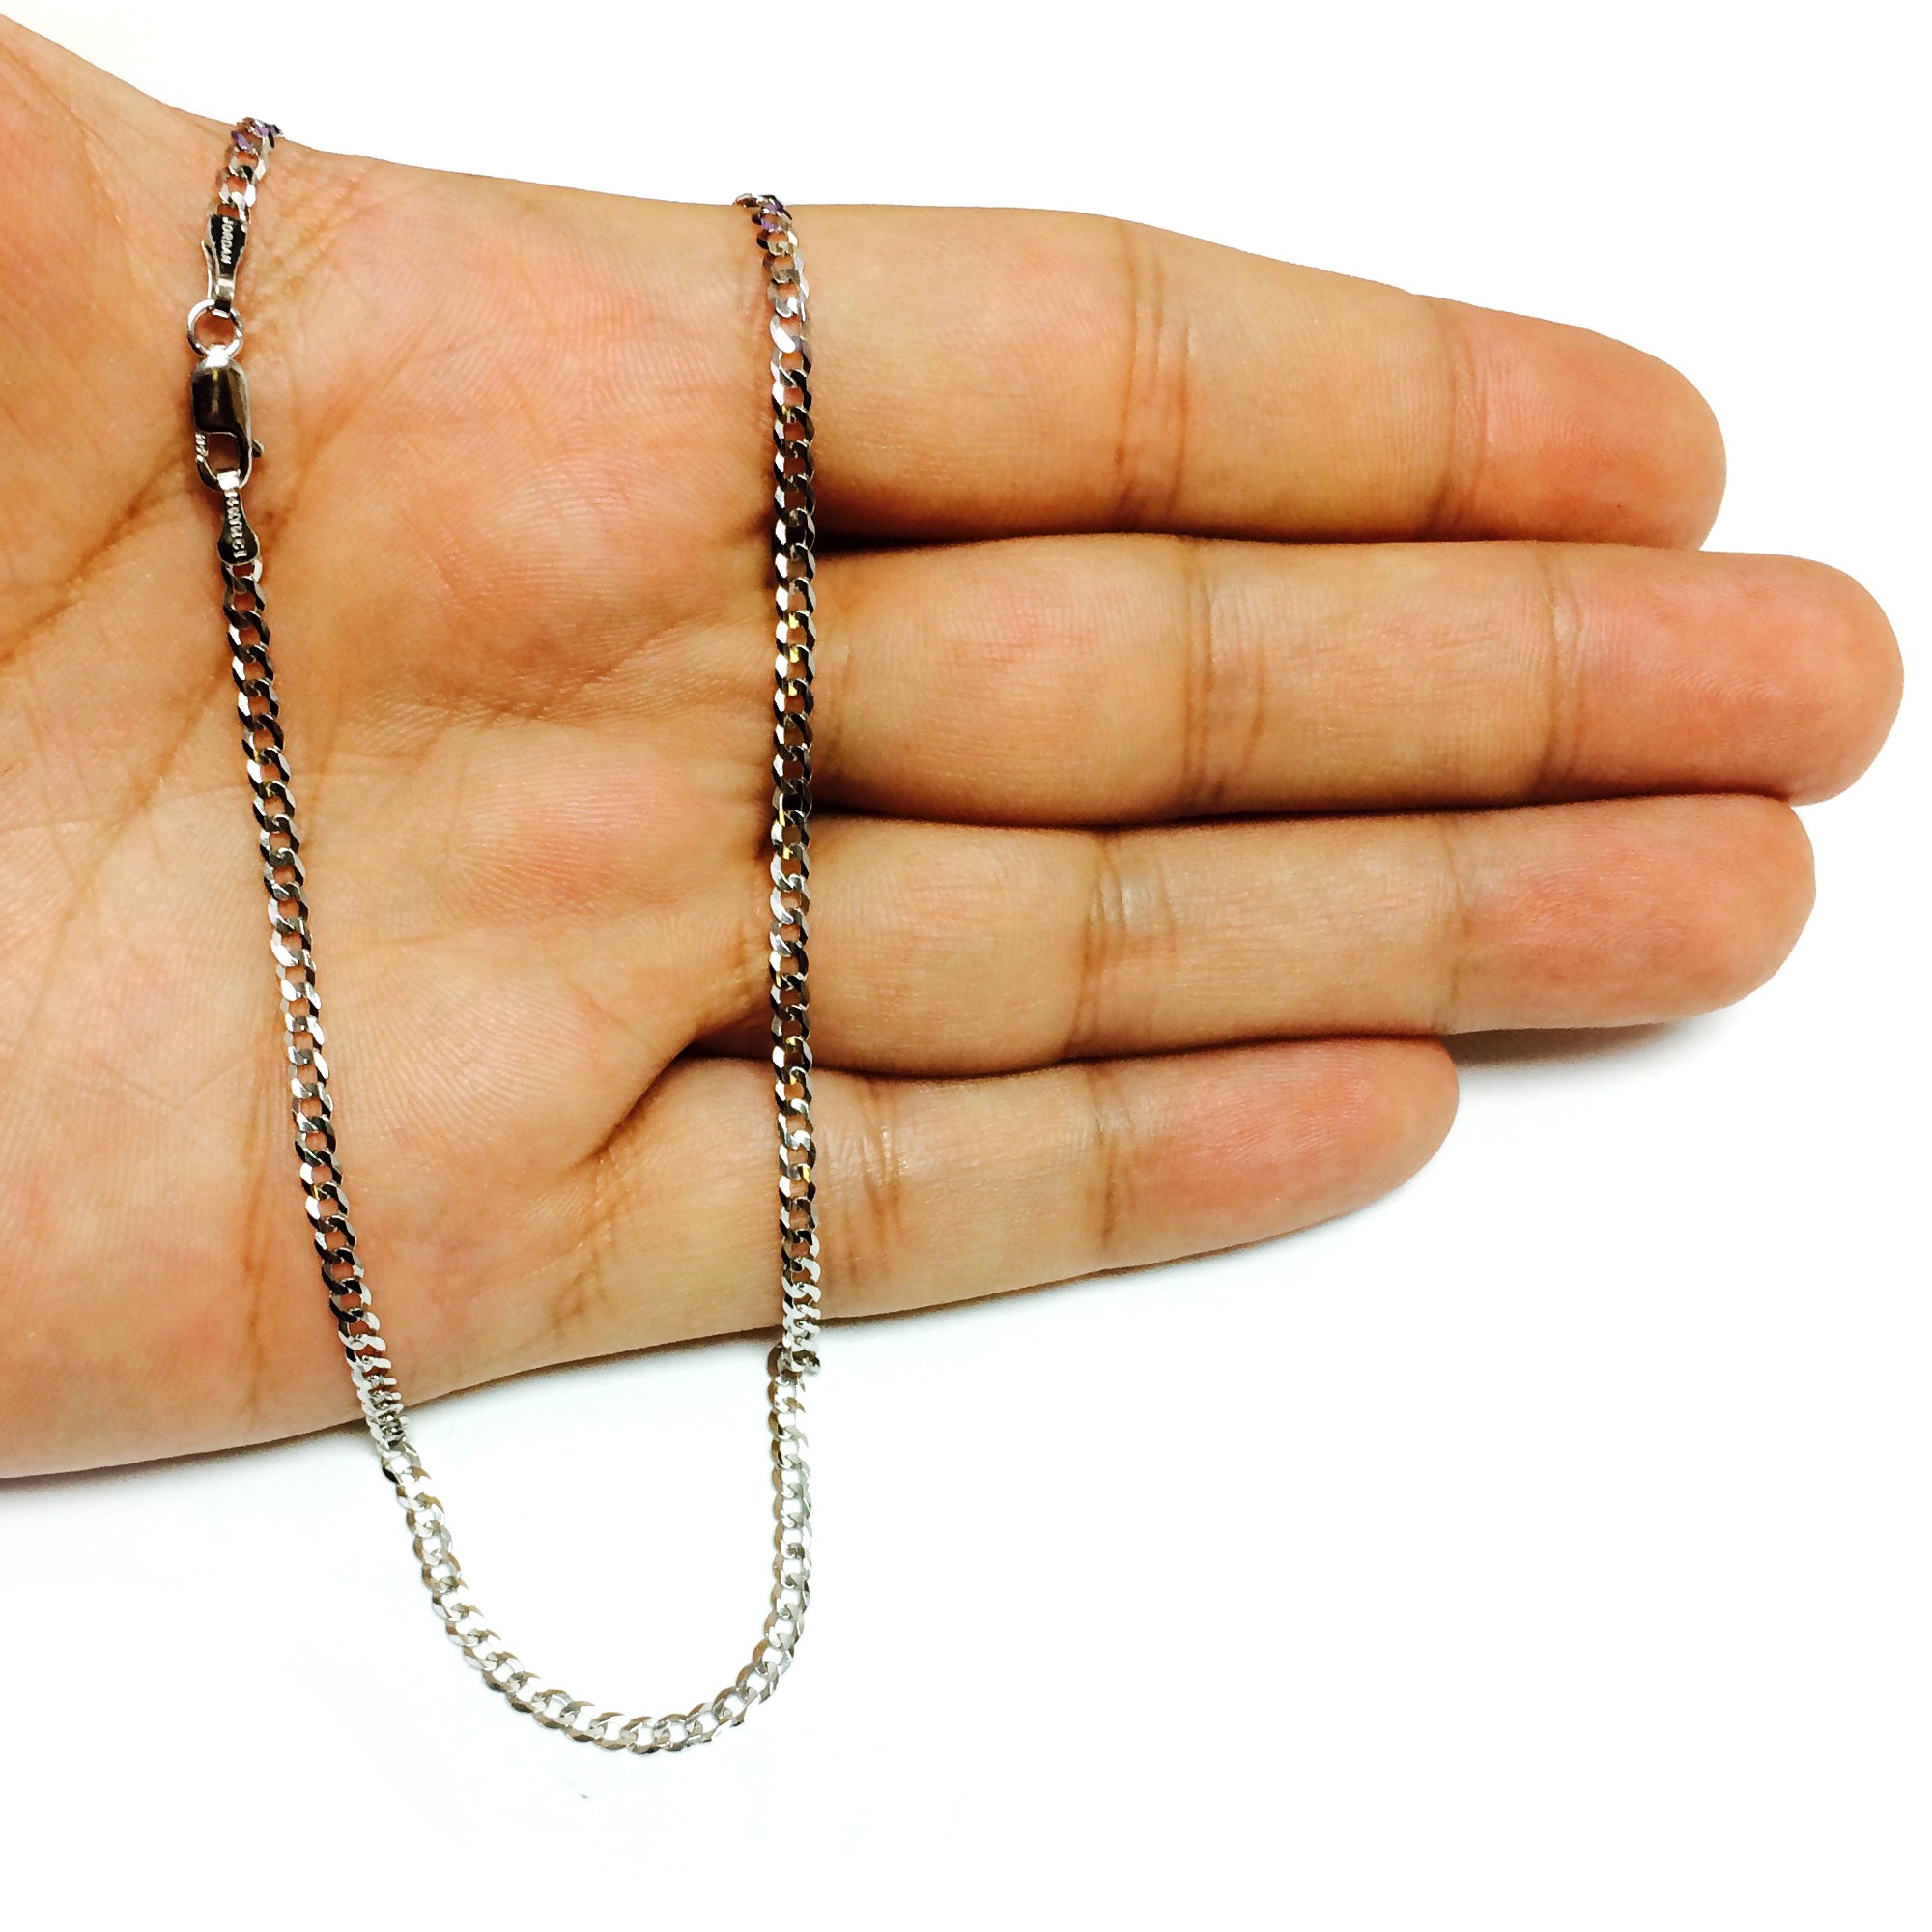 Collar de cadena curva cómoda de oro blanco de 14 k, joyería fina de diseño de 2,7 mm para hombres y mujeres